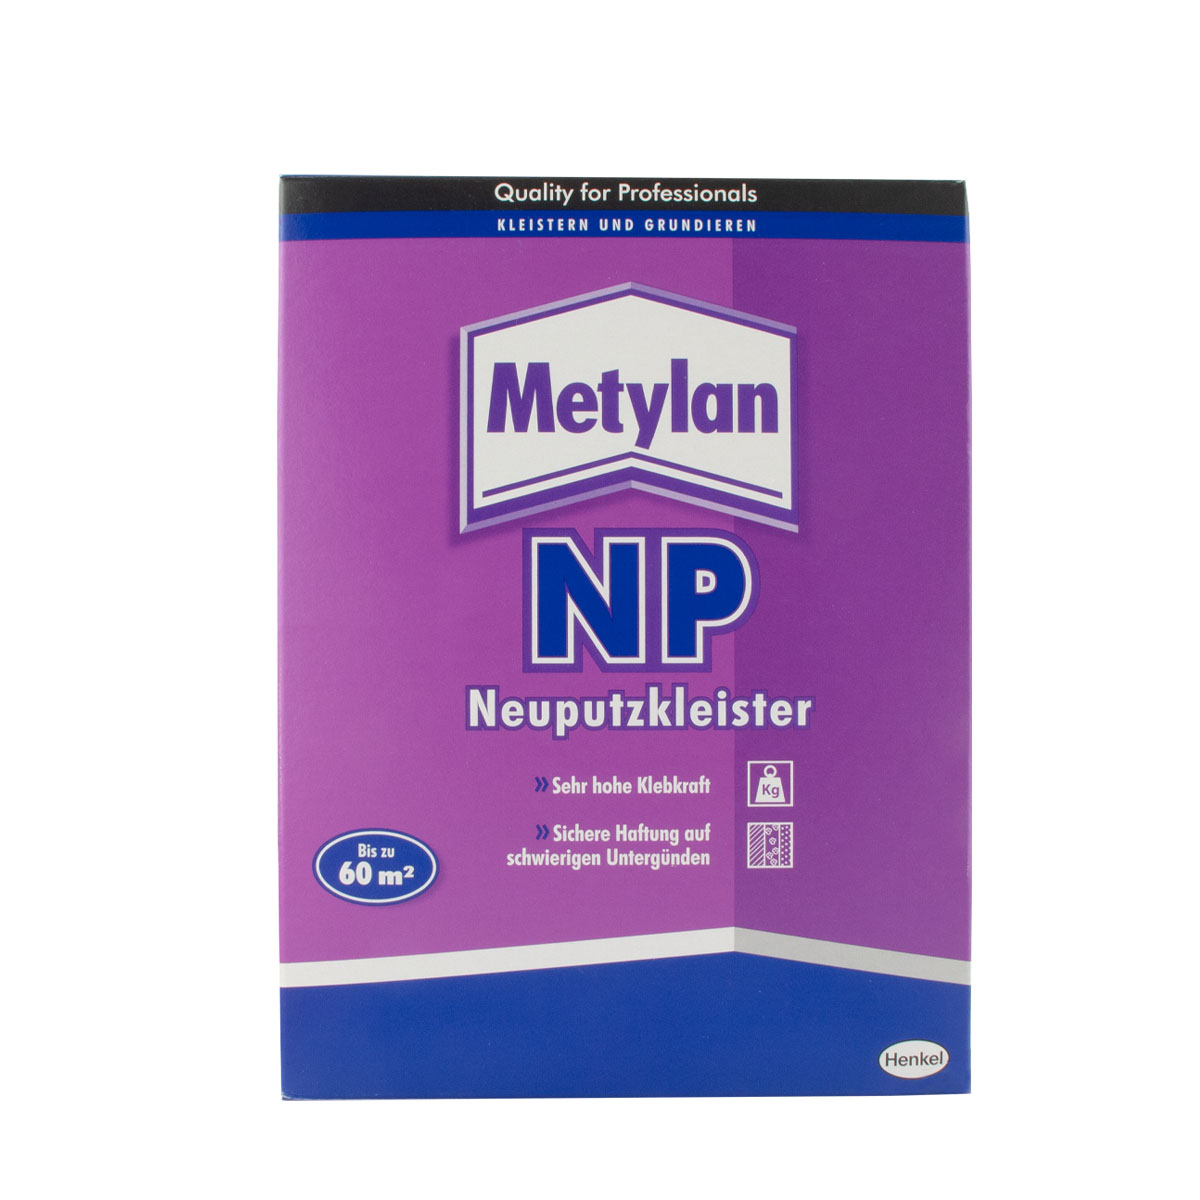 Metylan NP Neuputzkleister 1kg, Spezial- / Vlieskleber